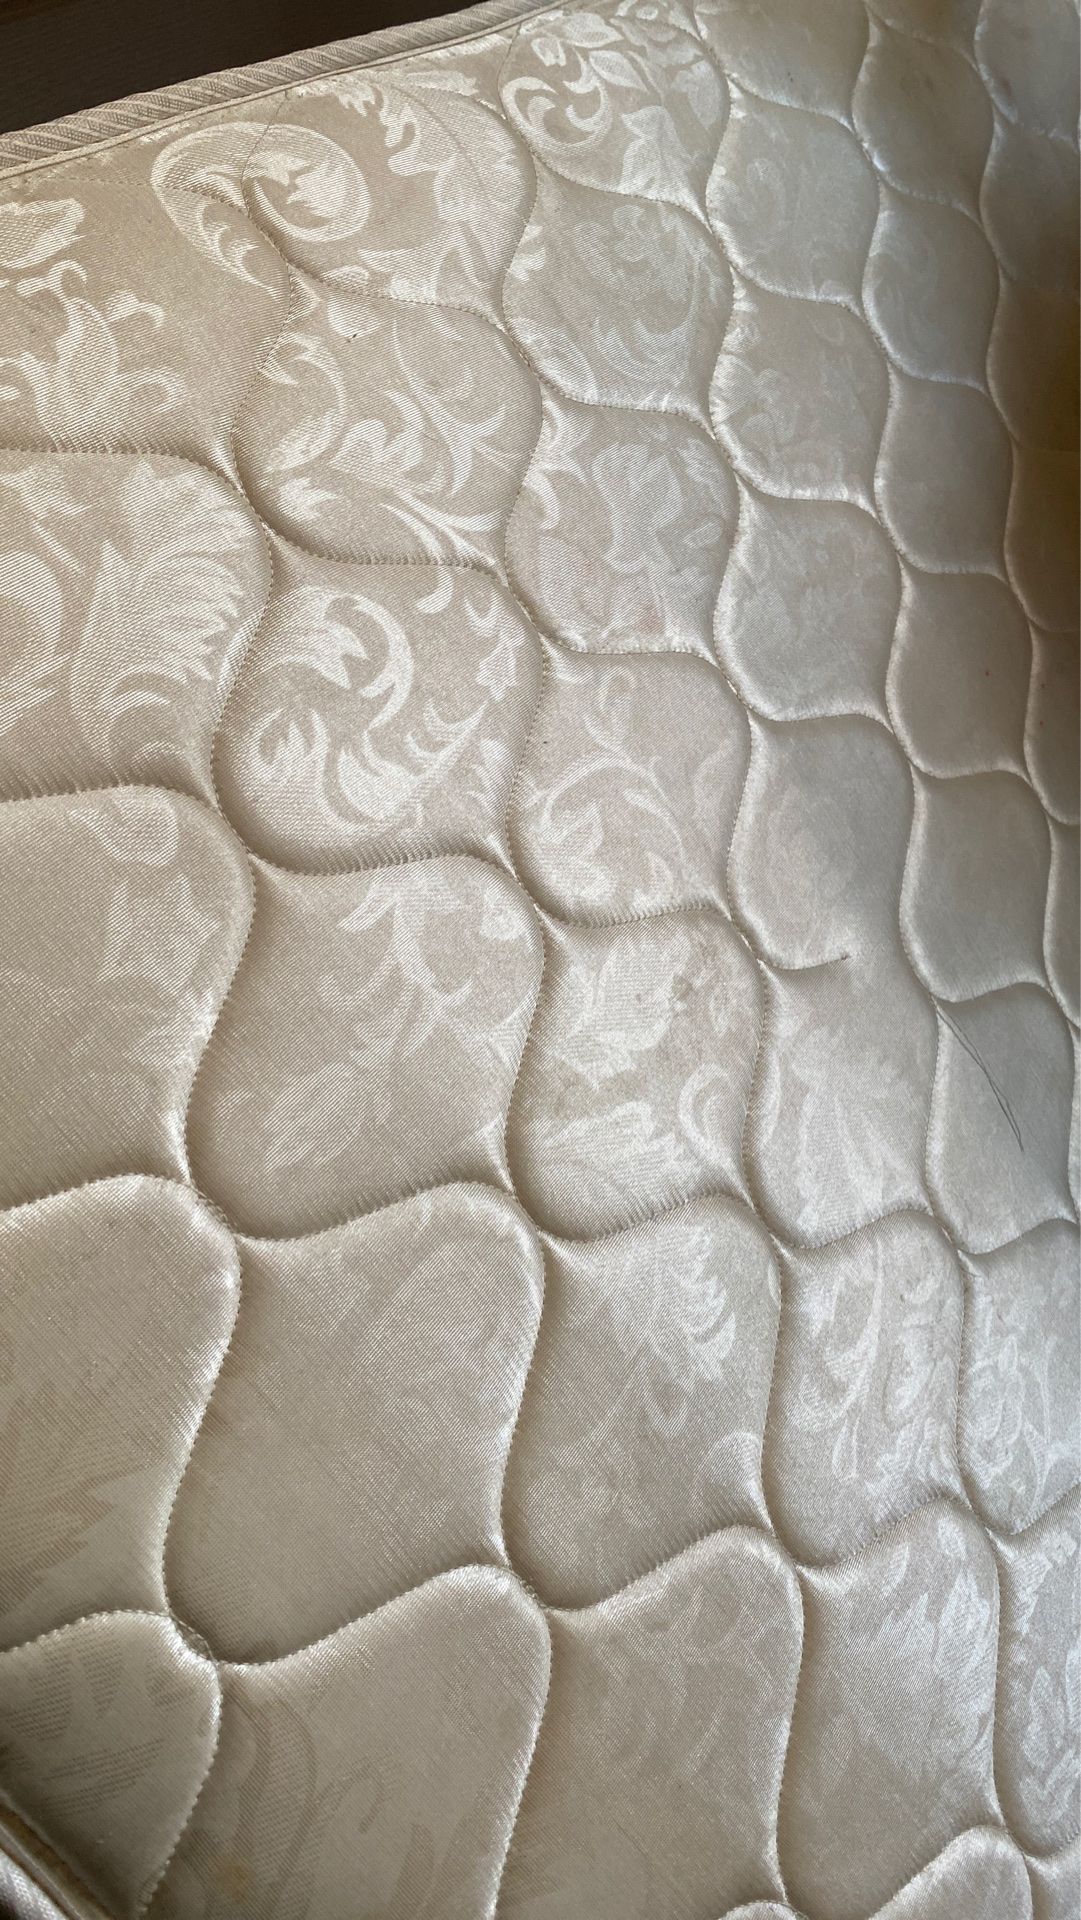 Free queen mattress